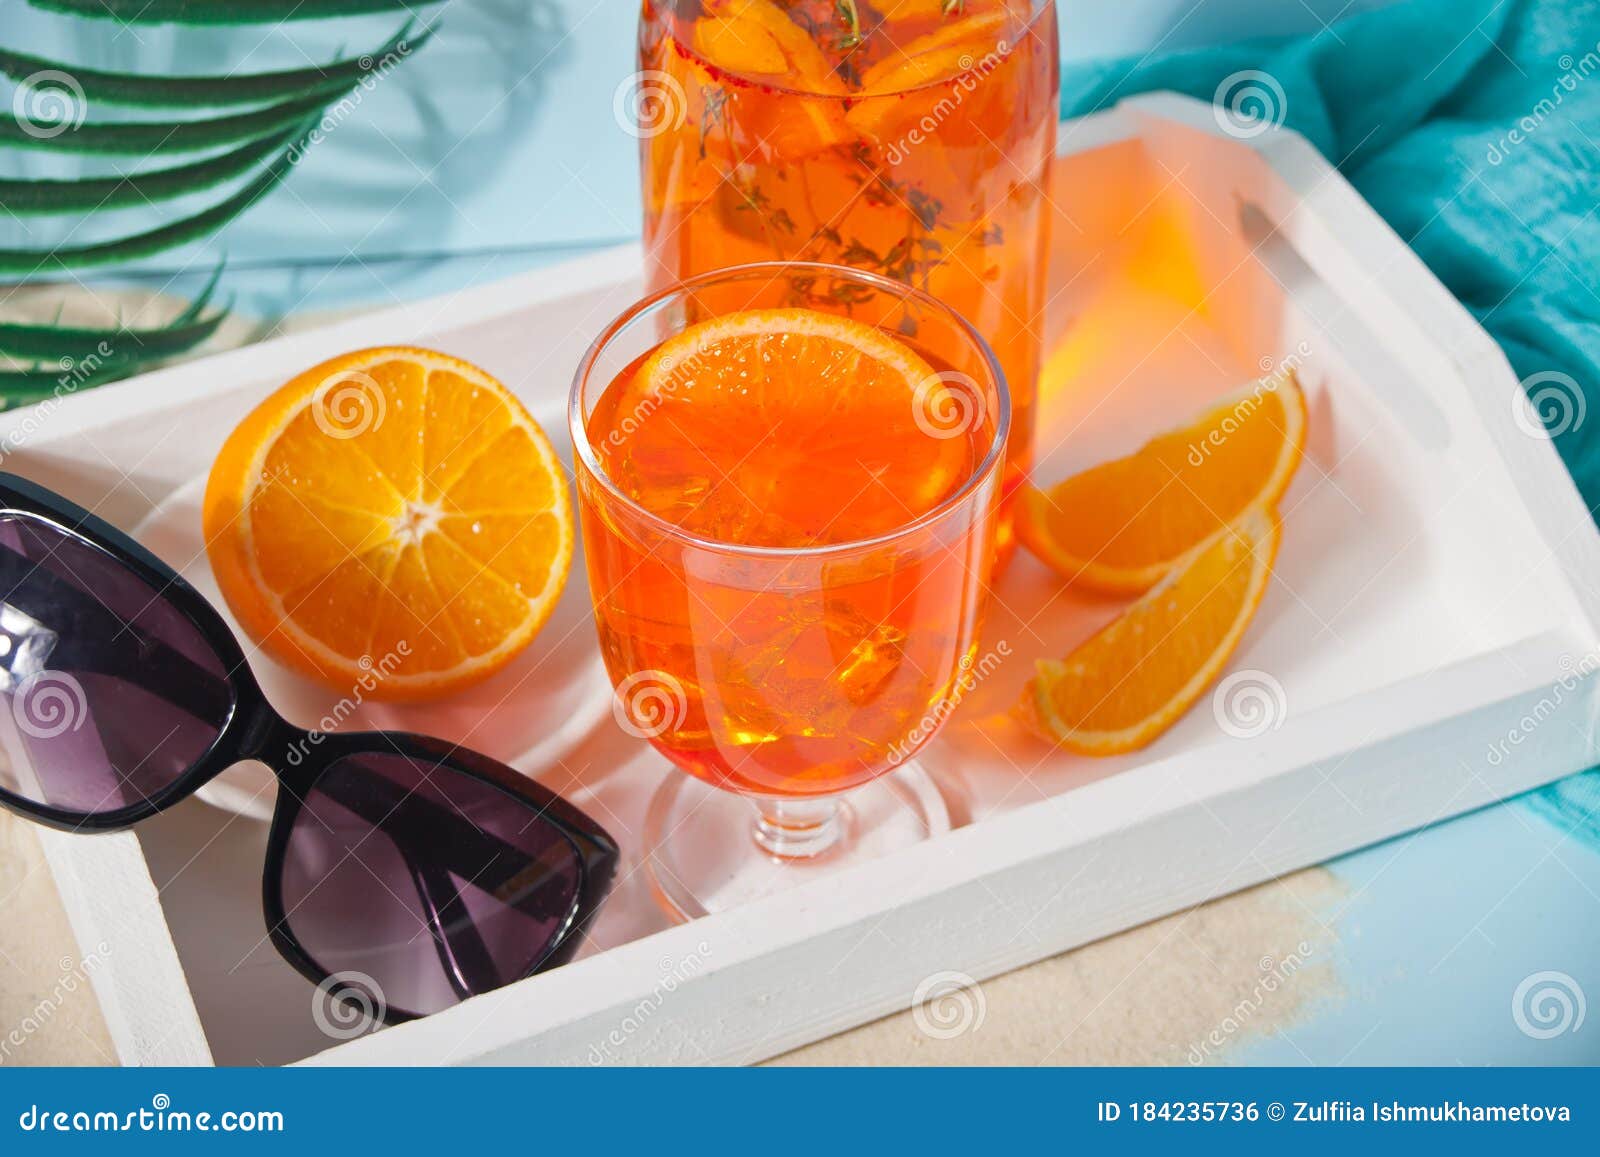 https://thumbs.dreamstime.com/z/glass-bottle-fresh-homemade-orange-sweet-iced-tea-cocktail-lemonade-thyme-refreshing-cold-drink-summer-party-glasses-184235736.jpg